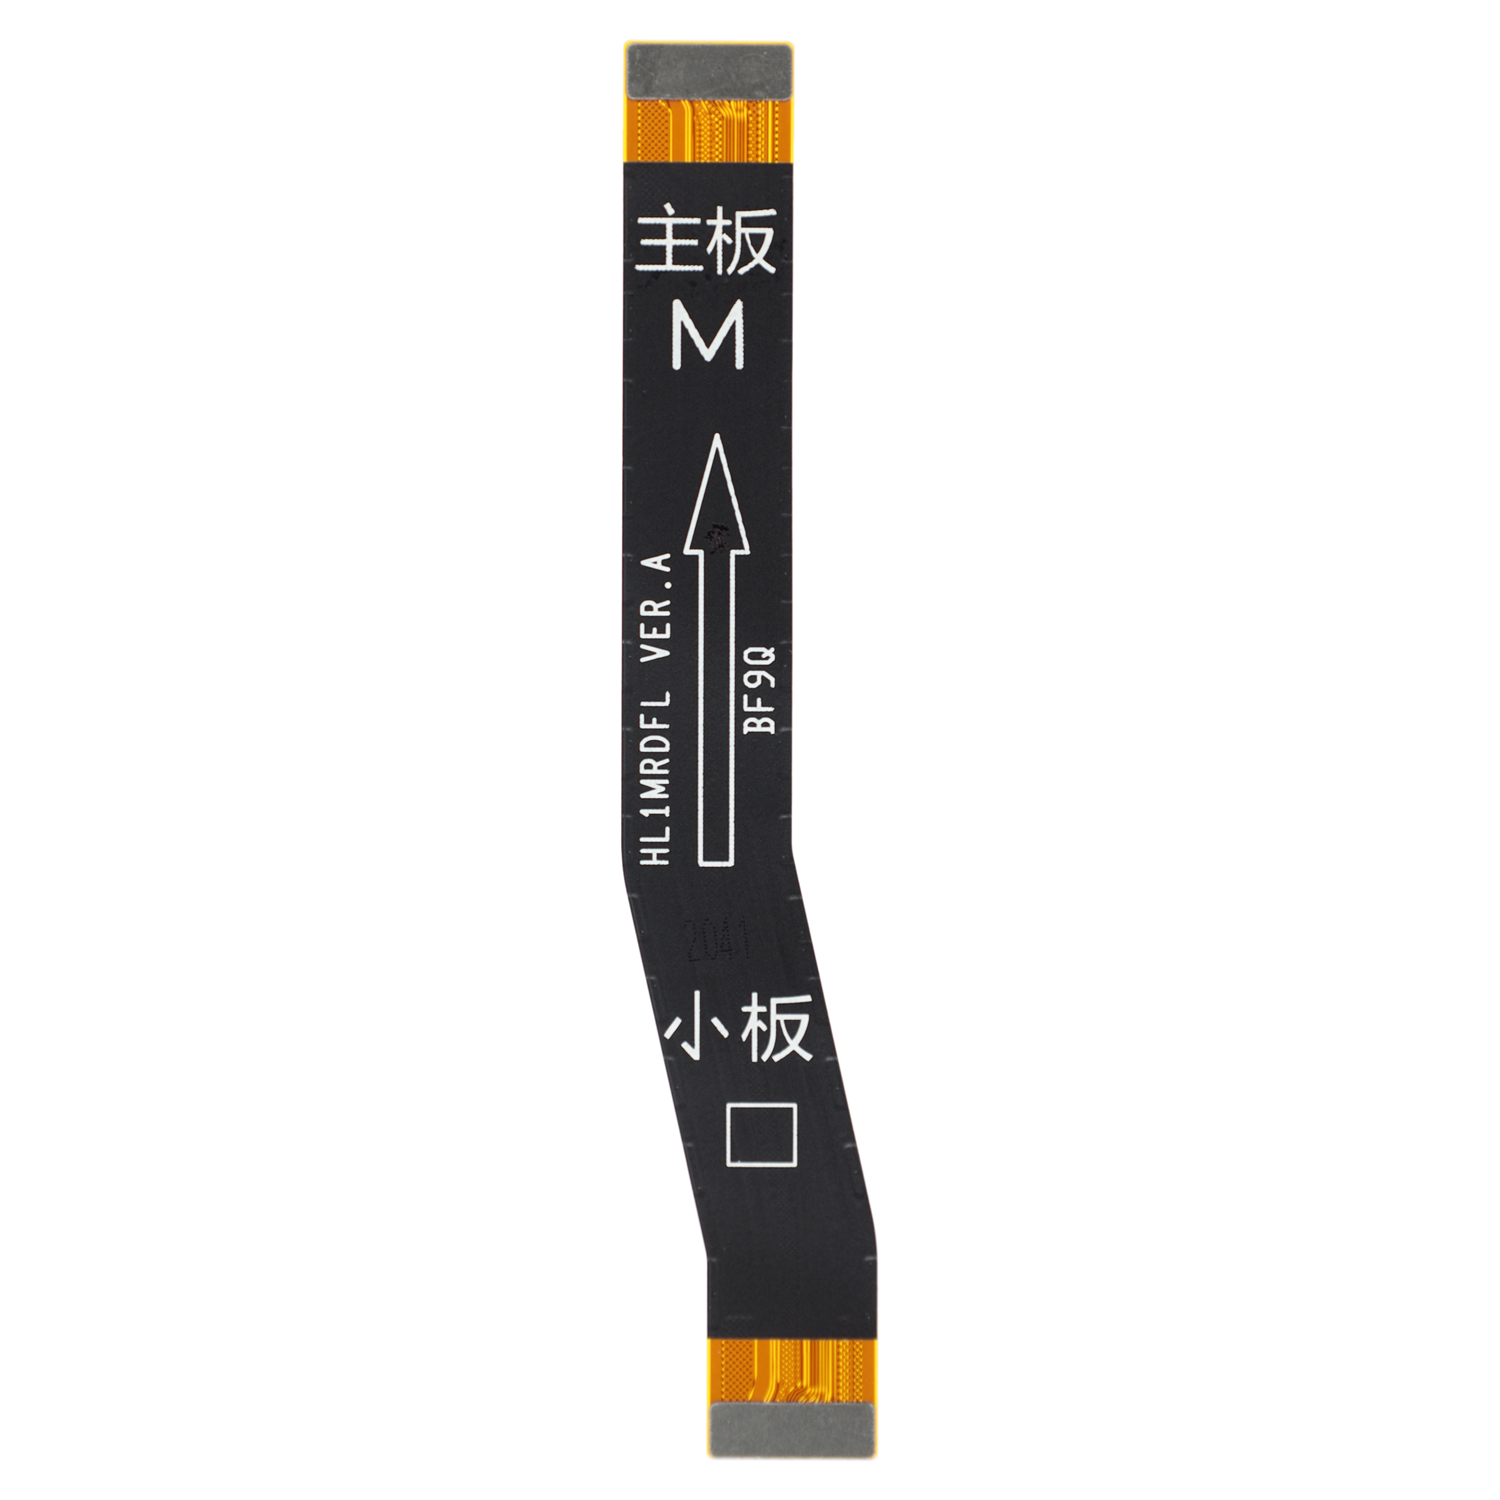 Main Flex Cable für Huawei Y9 2019 (JKM-L21, JKM-L23, JKM-LX3)